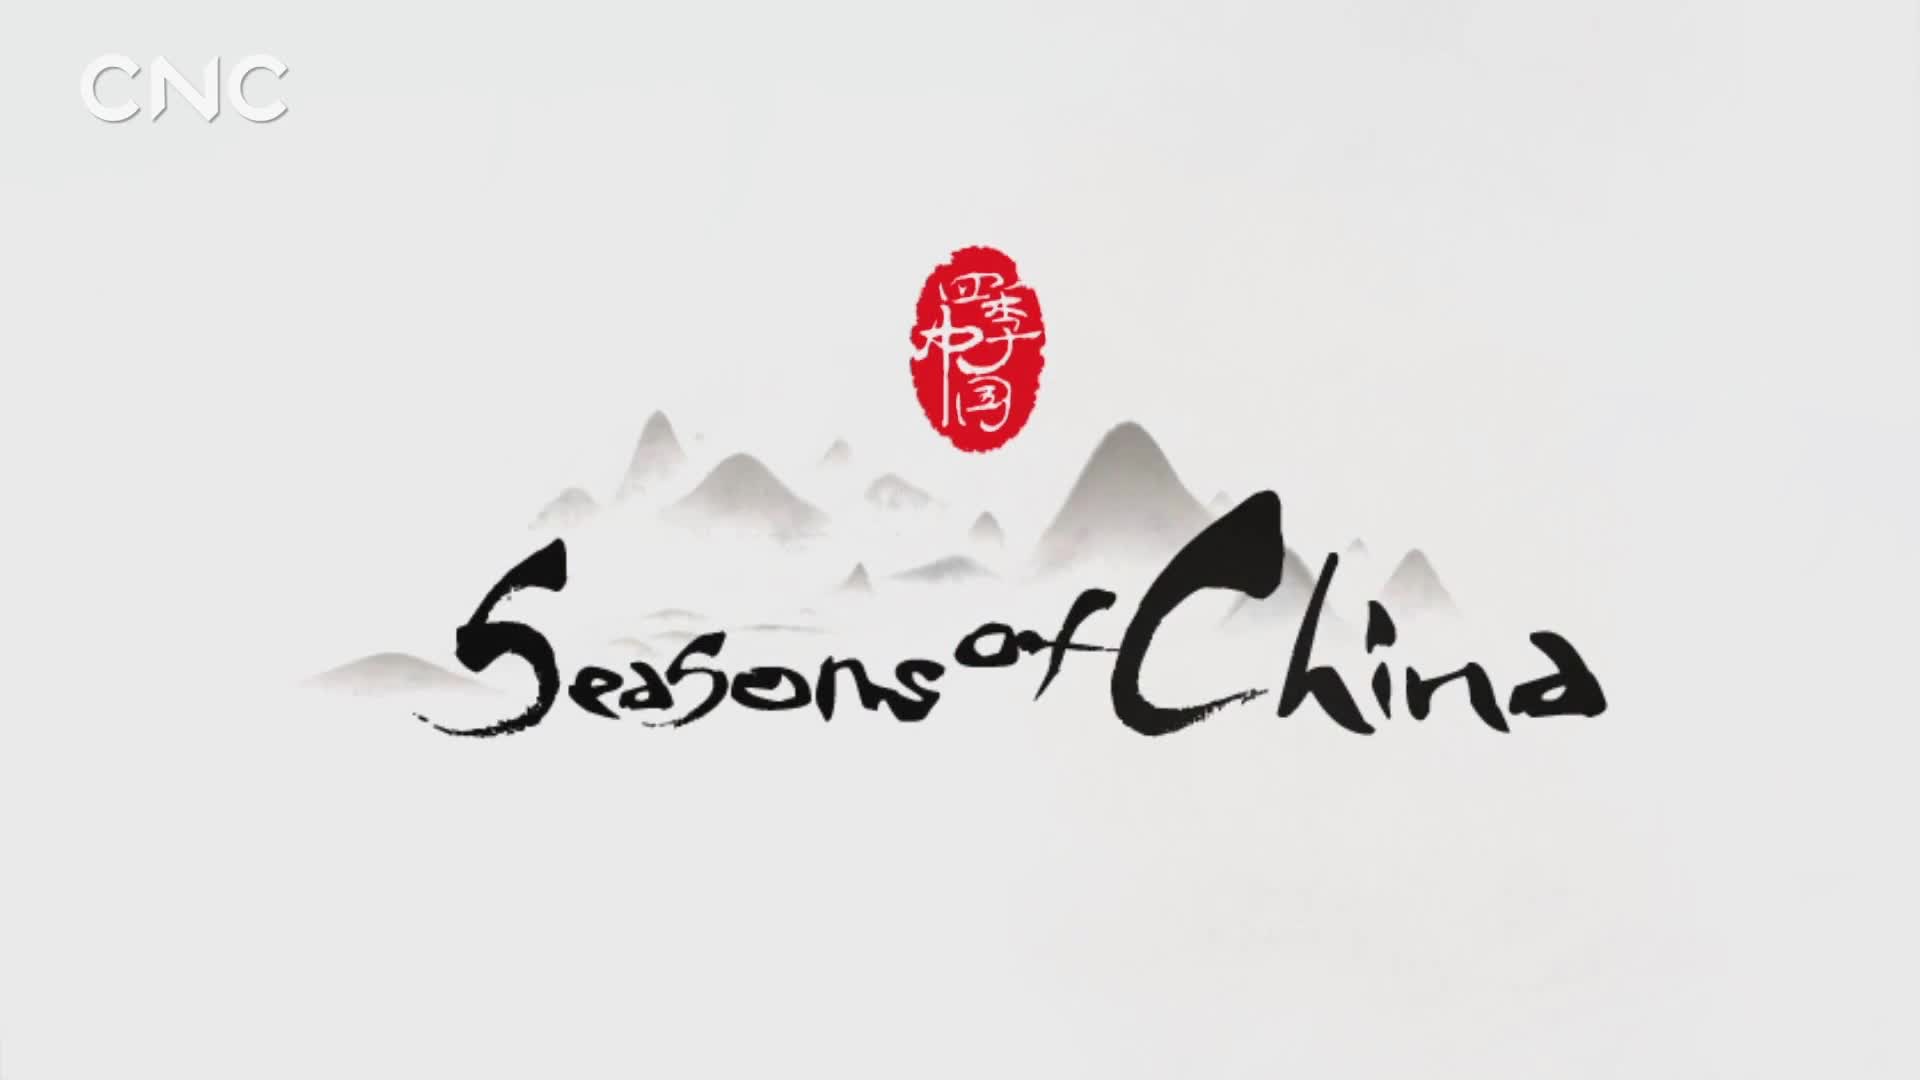 【纪录片】《四季中国》第五集《清明》